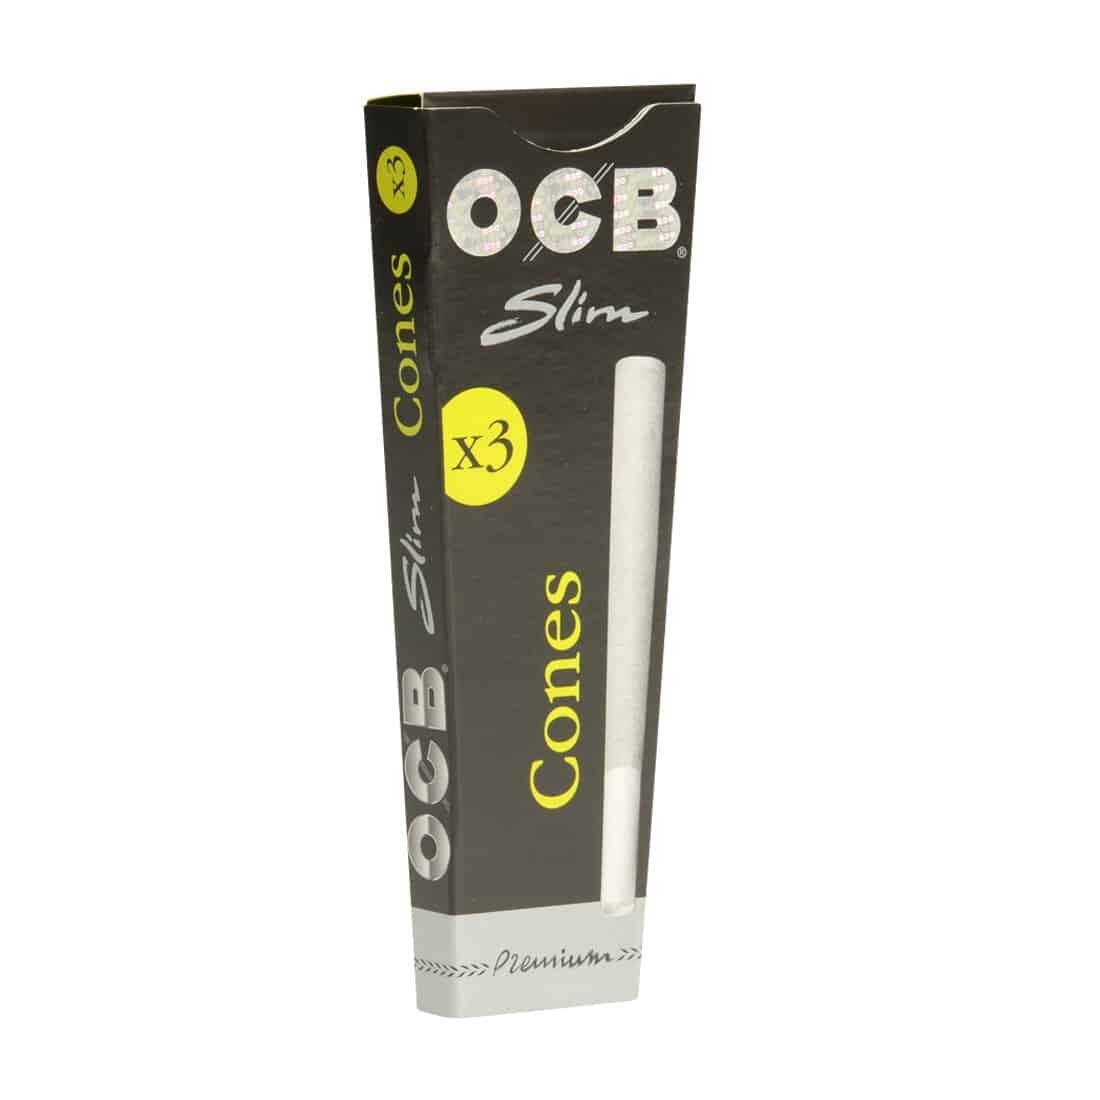 OCB - Premium slim cones, 3 pièces